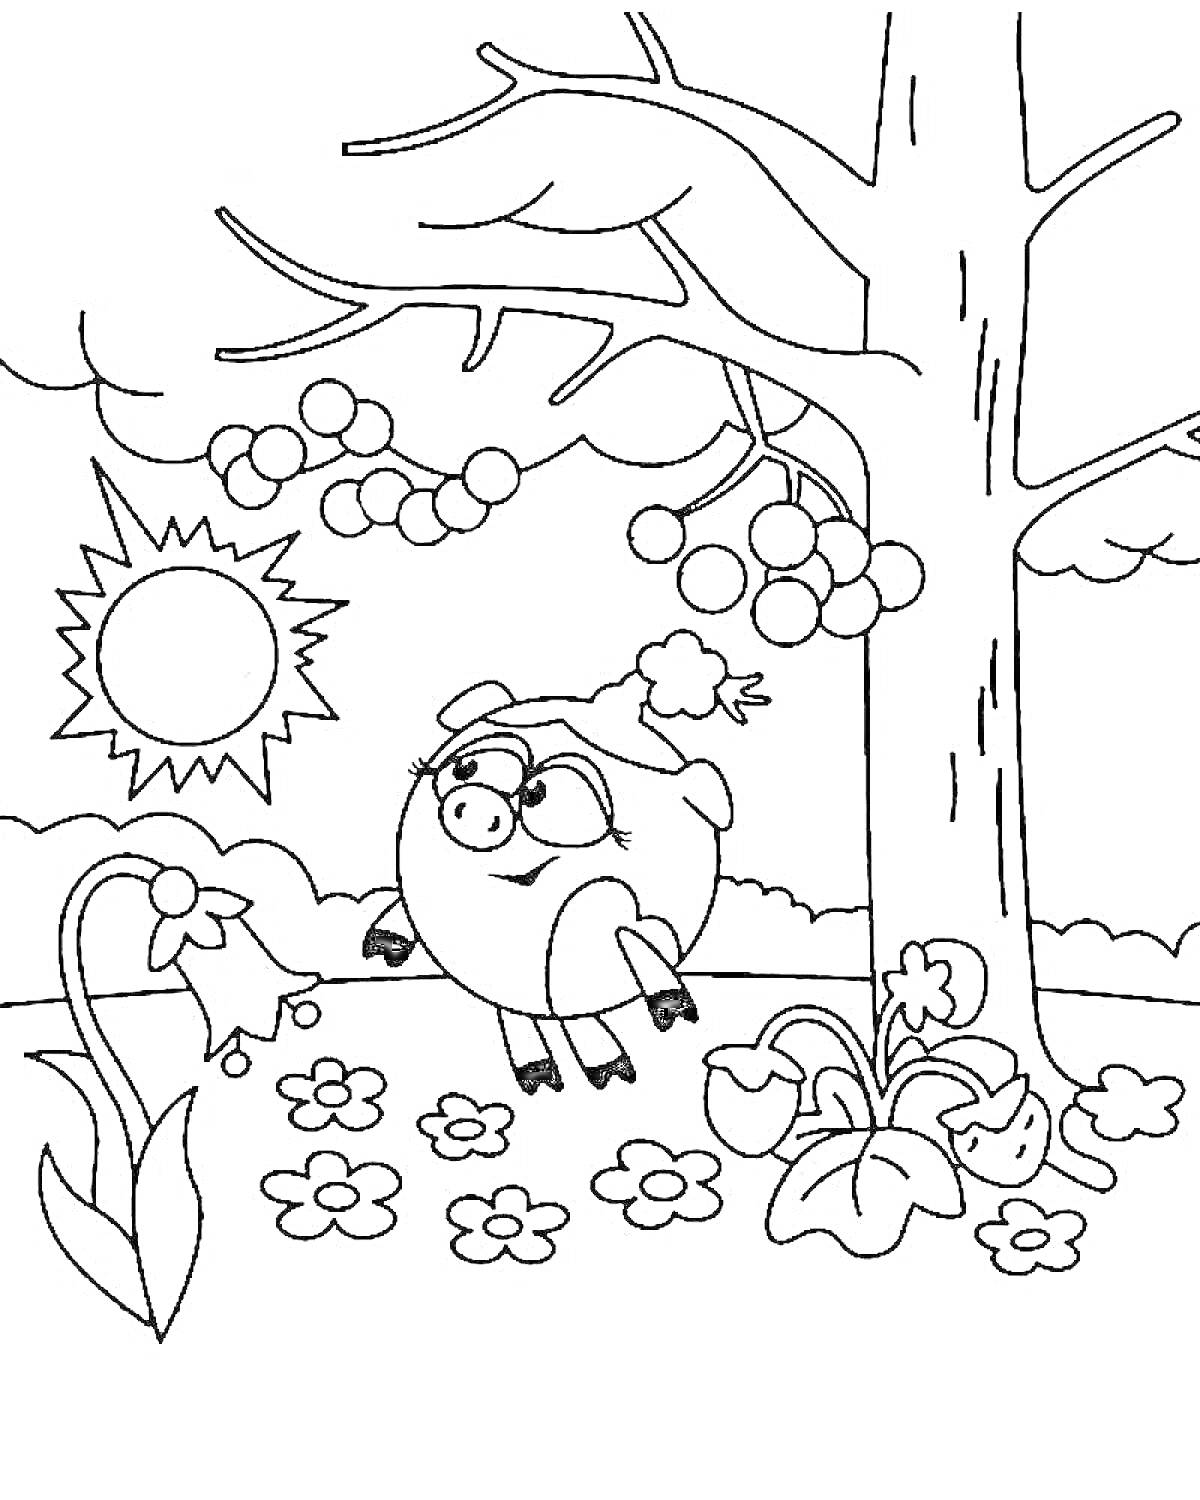 Раскраска Нюша под деревом с цветами, ягодами и солнцем на фоне